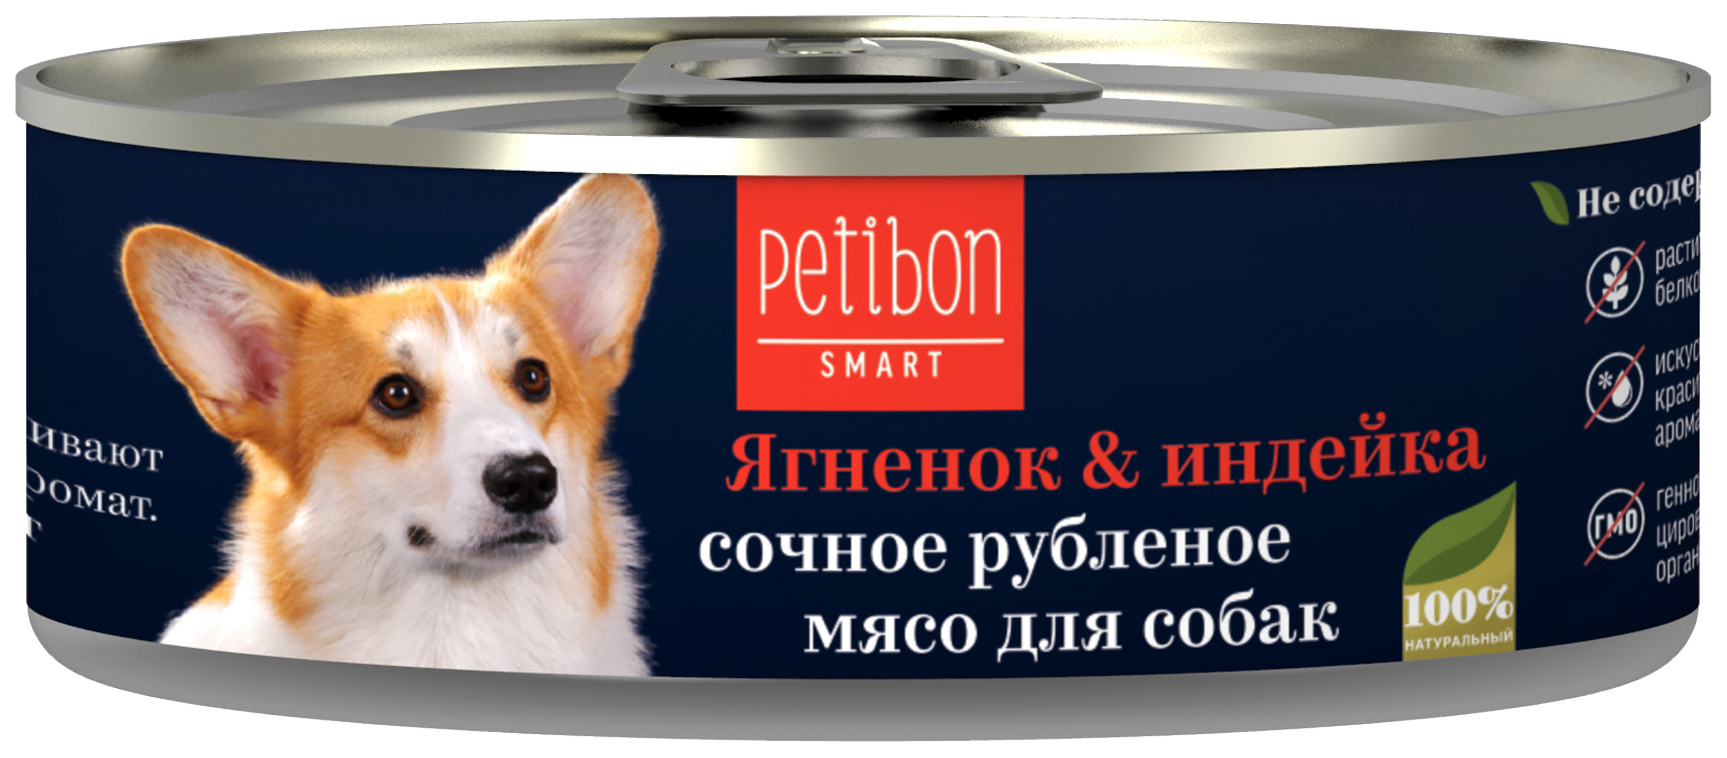 фото Консервы для собак petibon smart, ягненок, индейка, 24шт по 100г